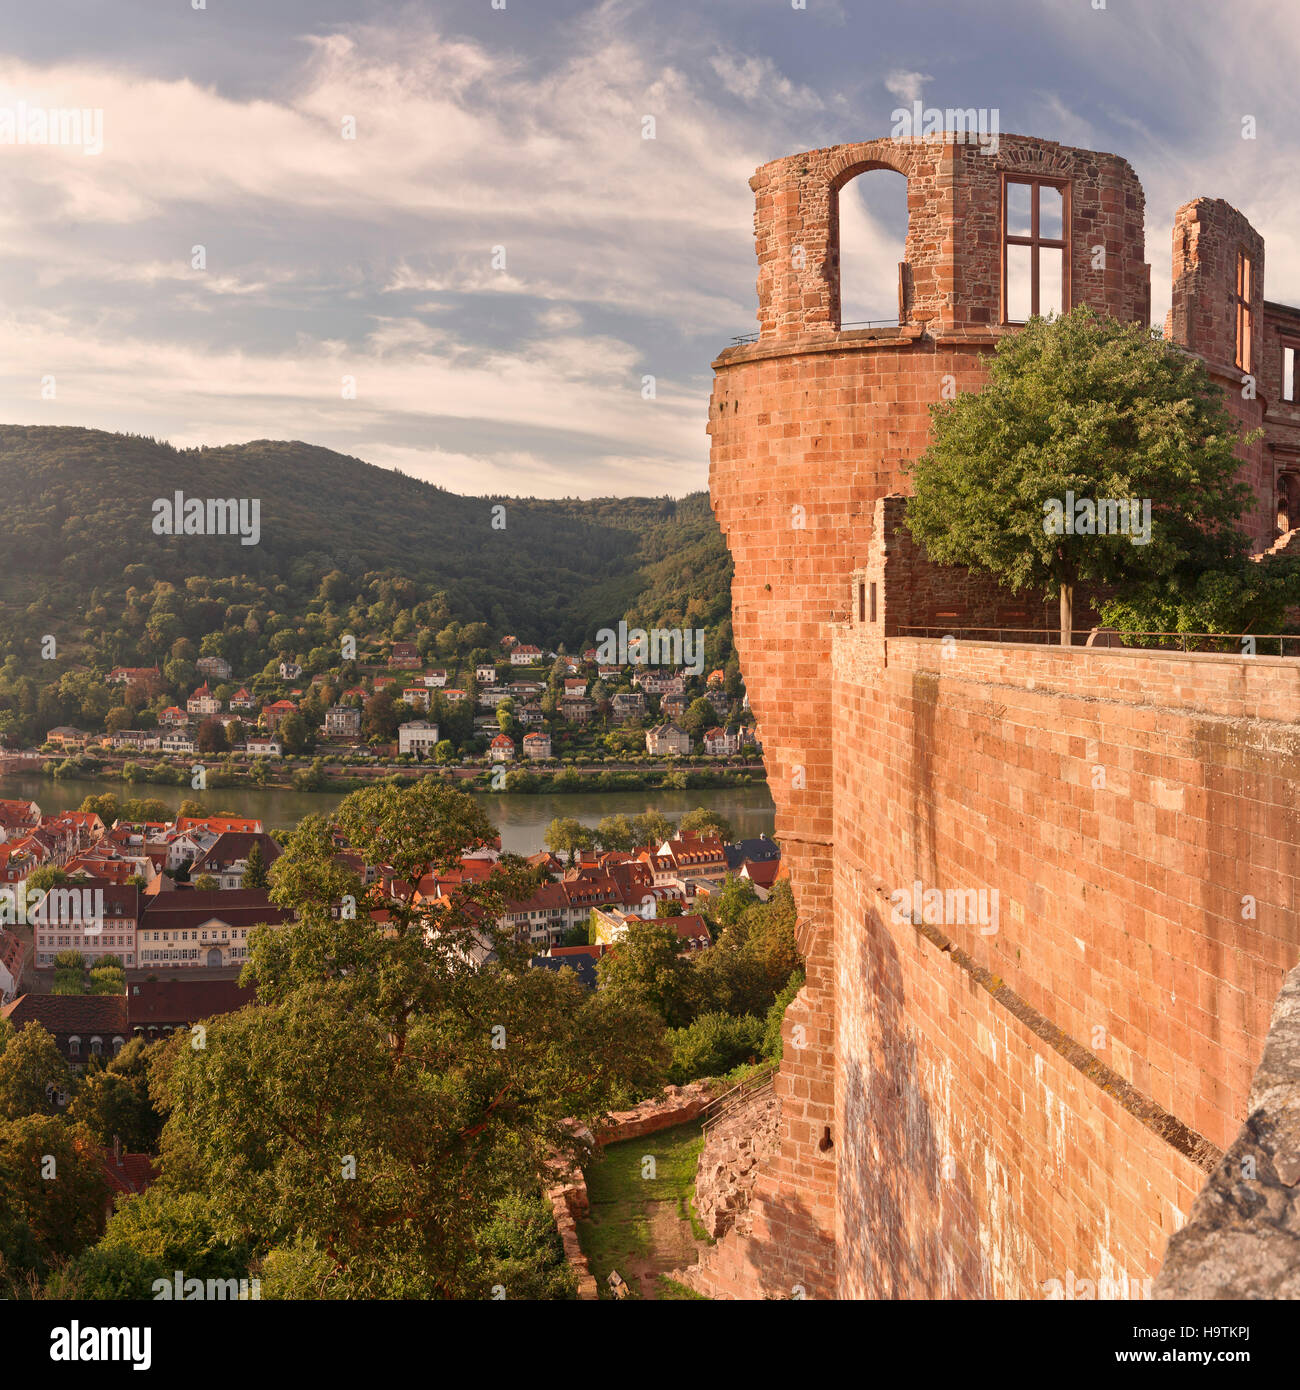 Vista desde el castillo sobre el río Neckar en Heidelberg, Baden-Württemberg, Alemania Foto de stock